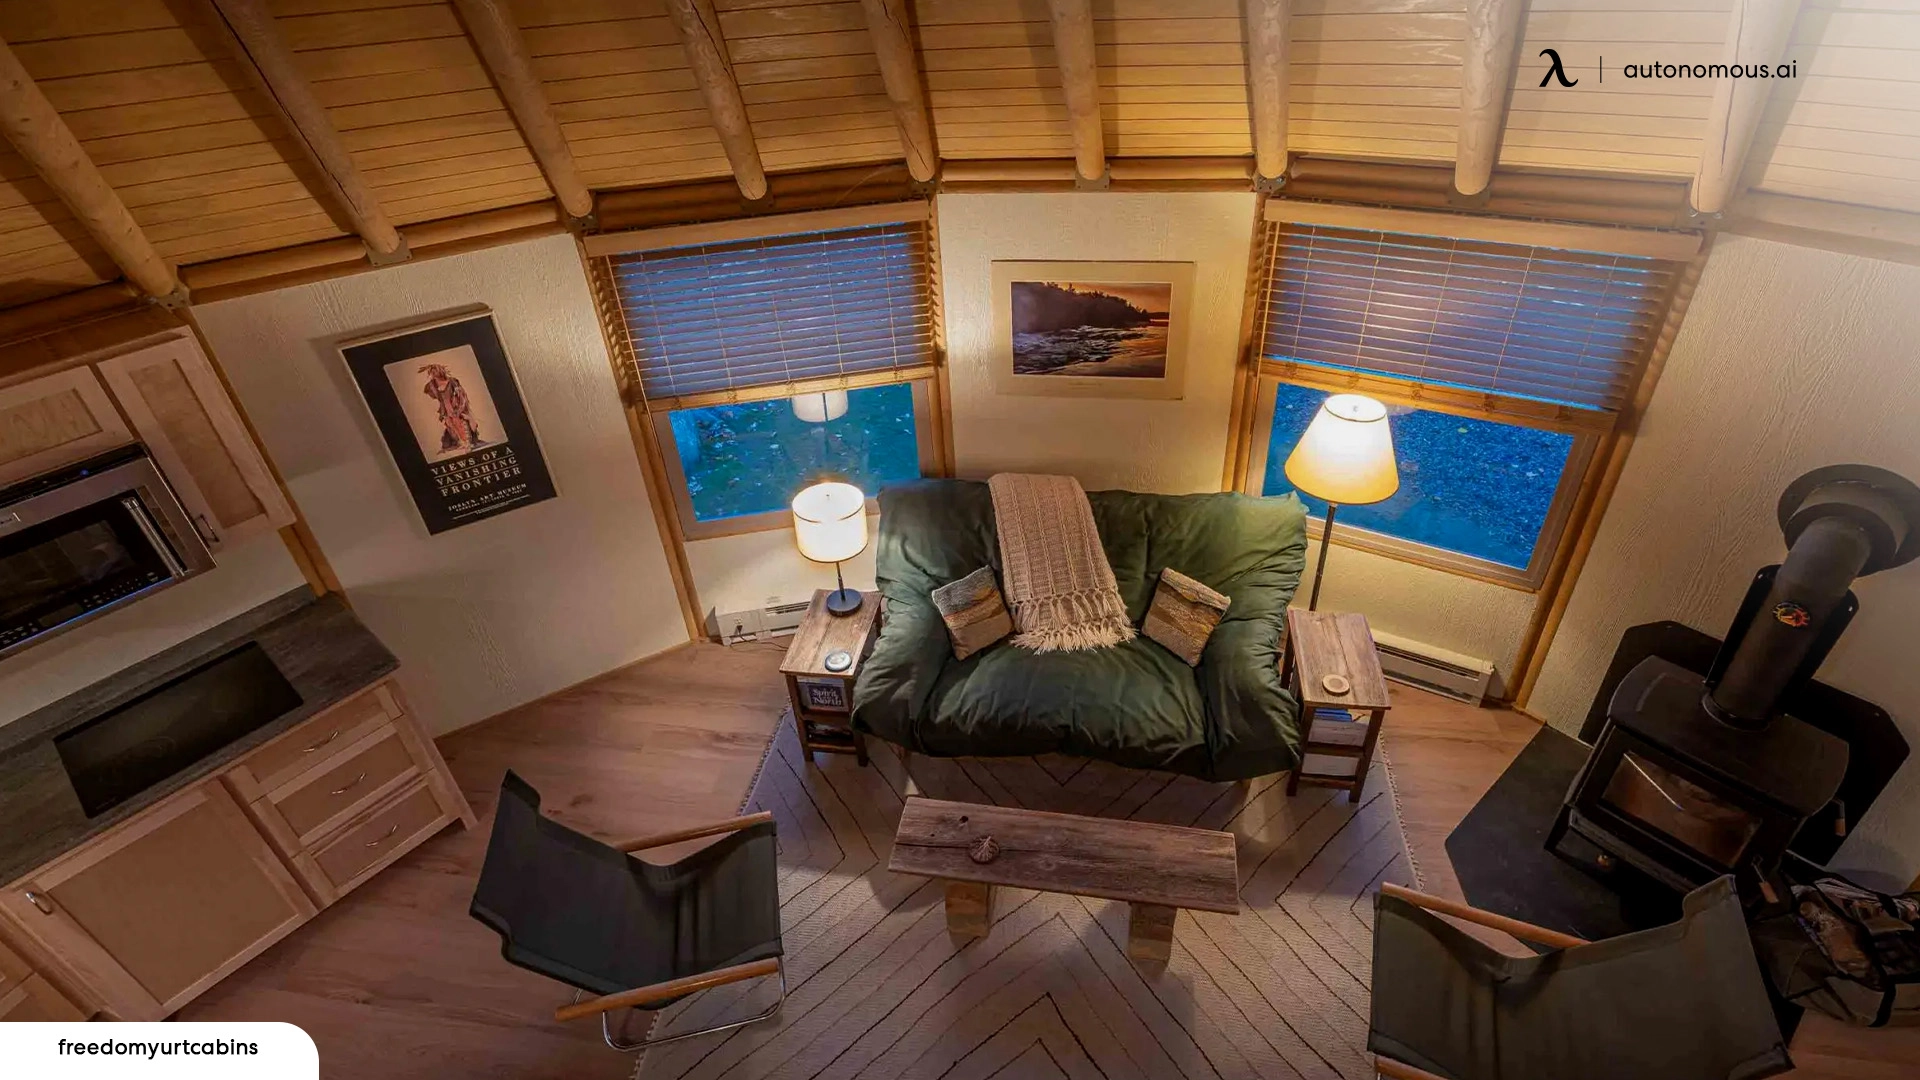 Freedom Yurt Cabins - modern yurt house